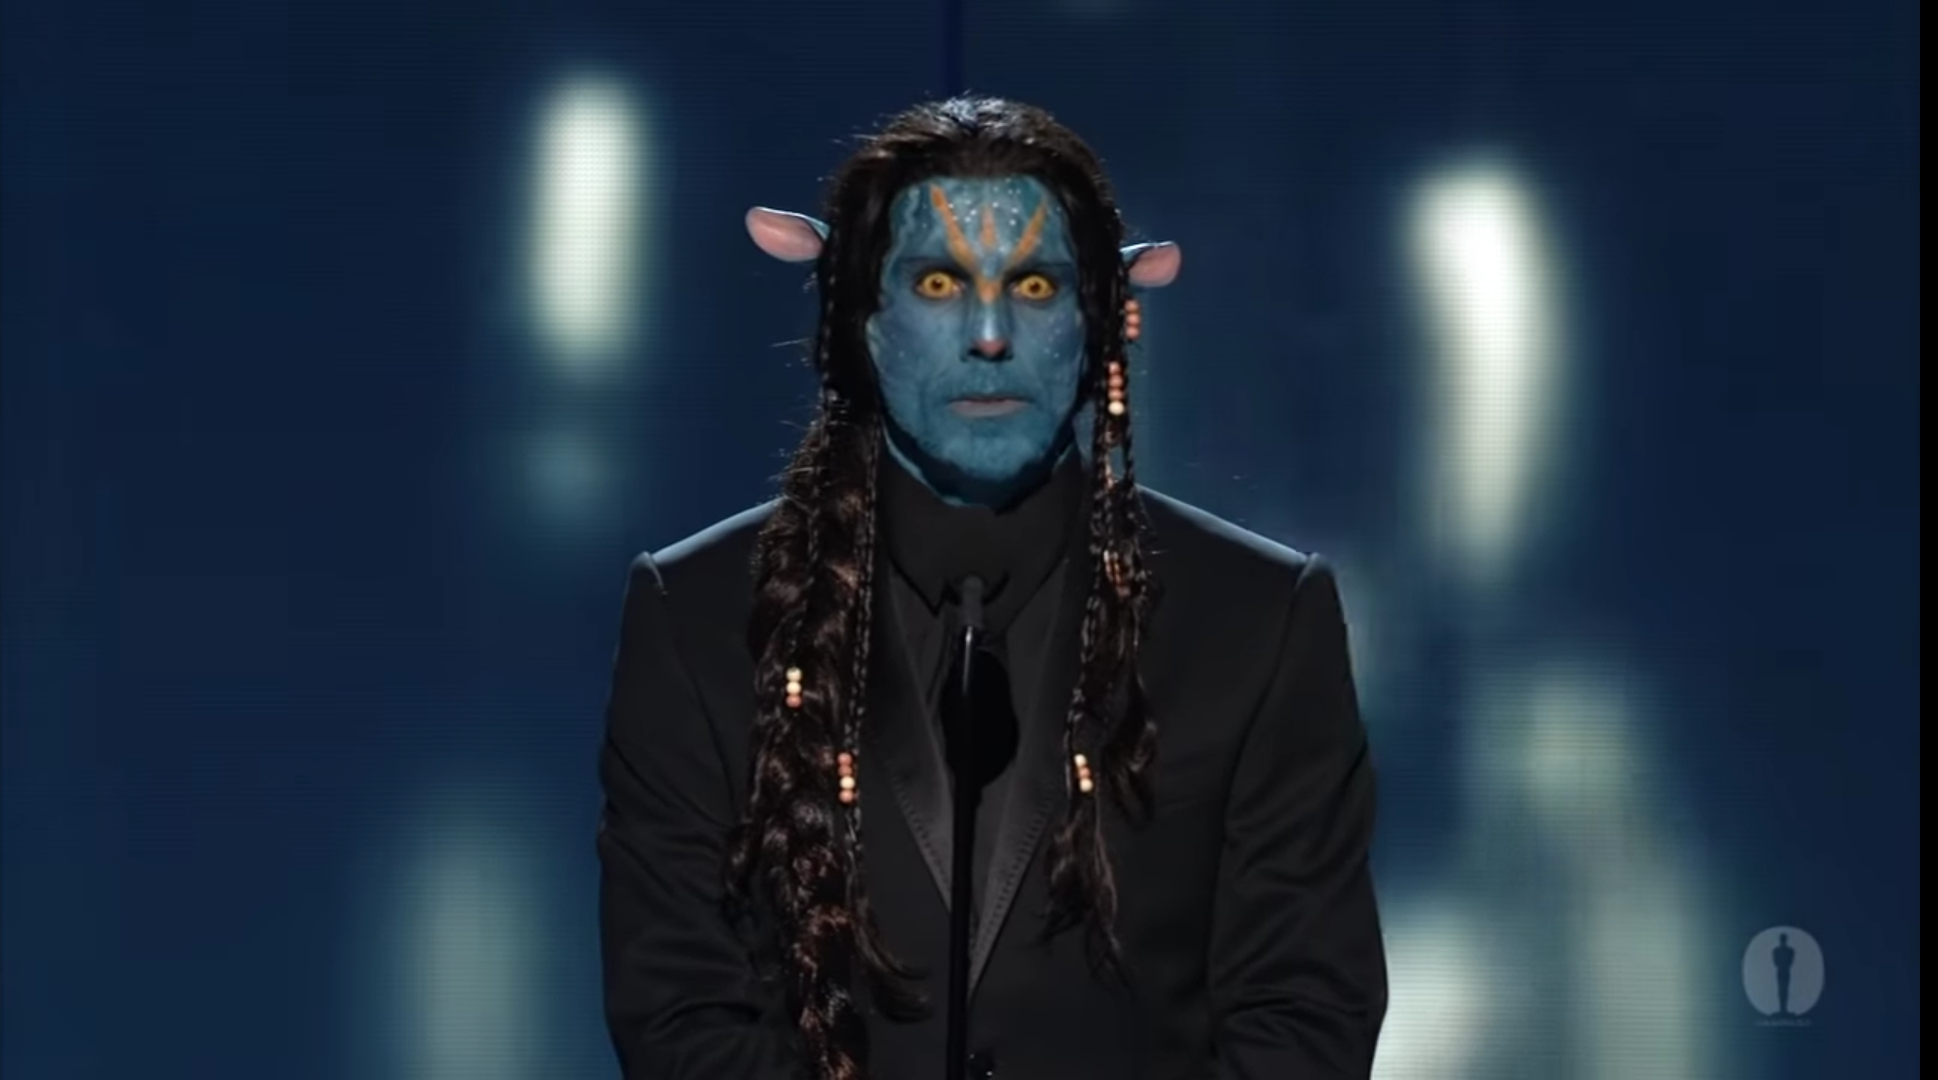 High Quality Avatar at Oscars Blank Meme Template